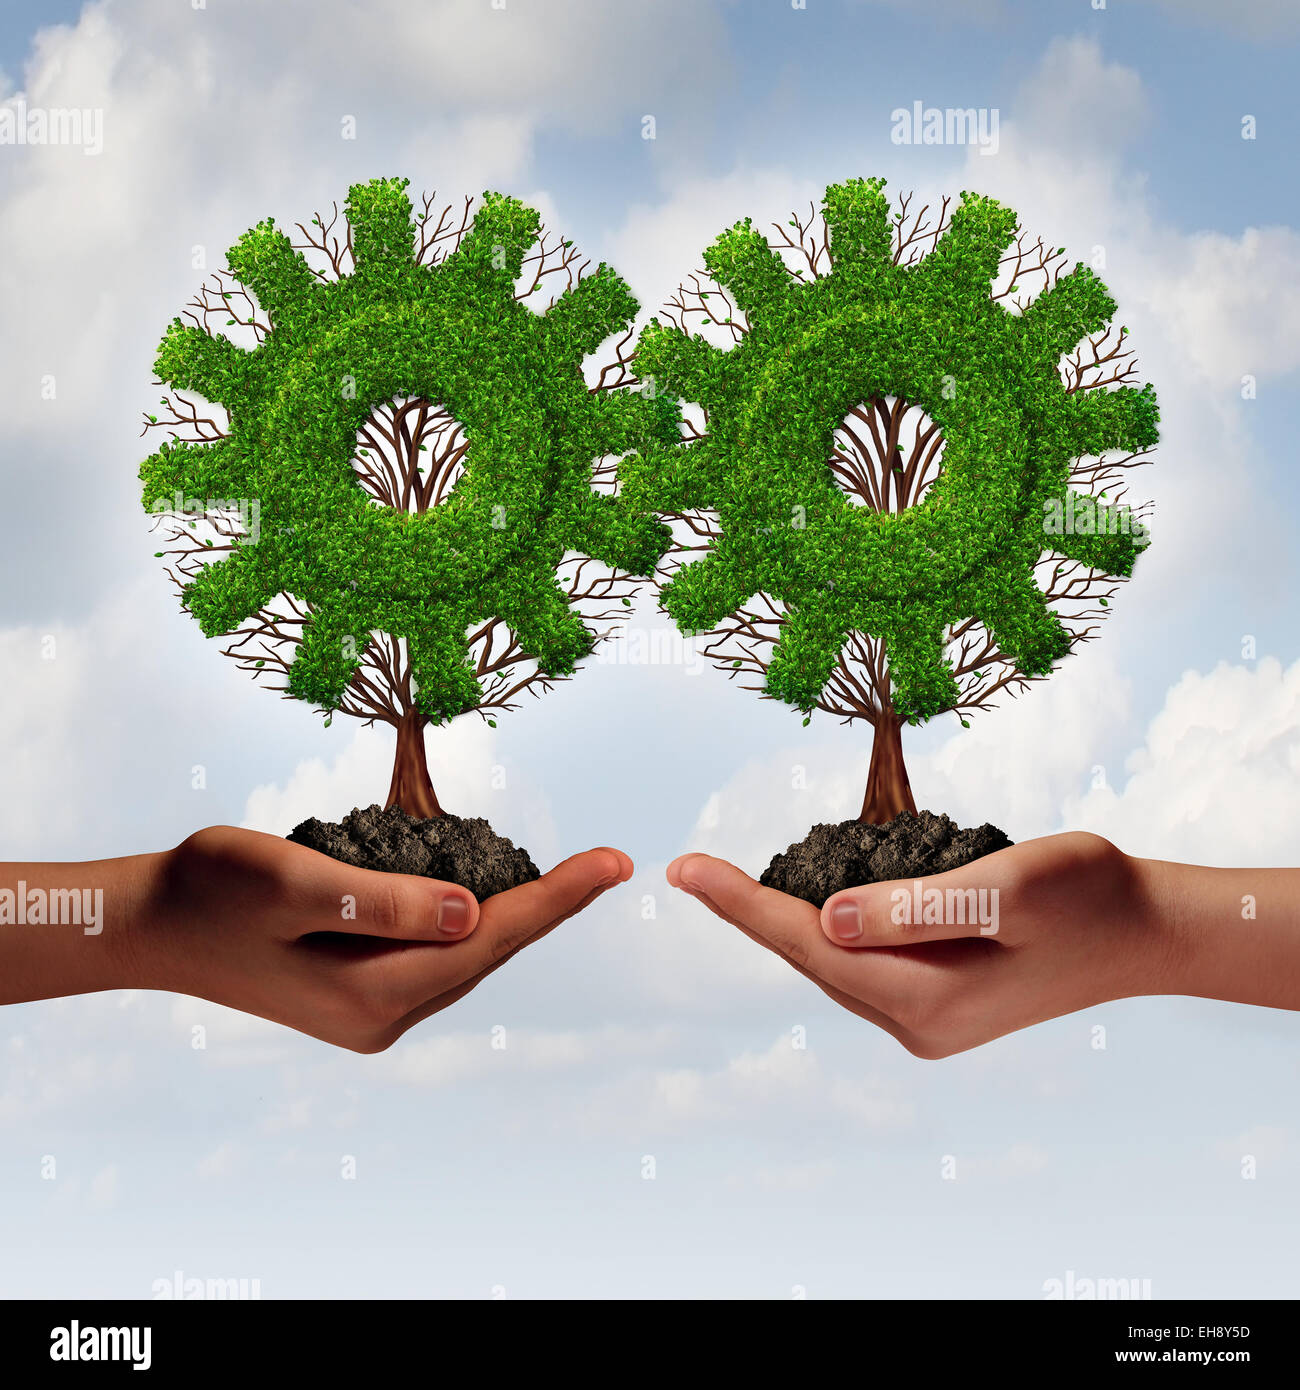 Il Team di business il concetto di strategia come due mani tenendo collegato alberi conformata come un ingranaggio o ruota dentata come una crescente partenariato finanziario uniti insieme per la crescita aziendale e il lavoro di squadra. Foto Stock